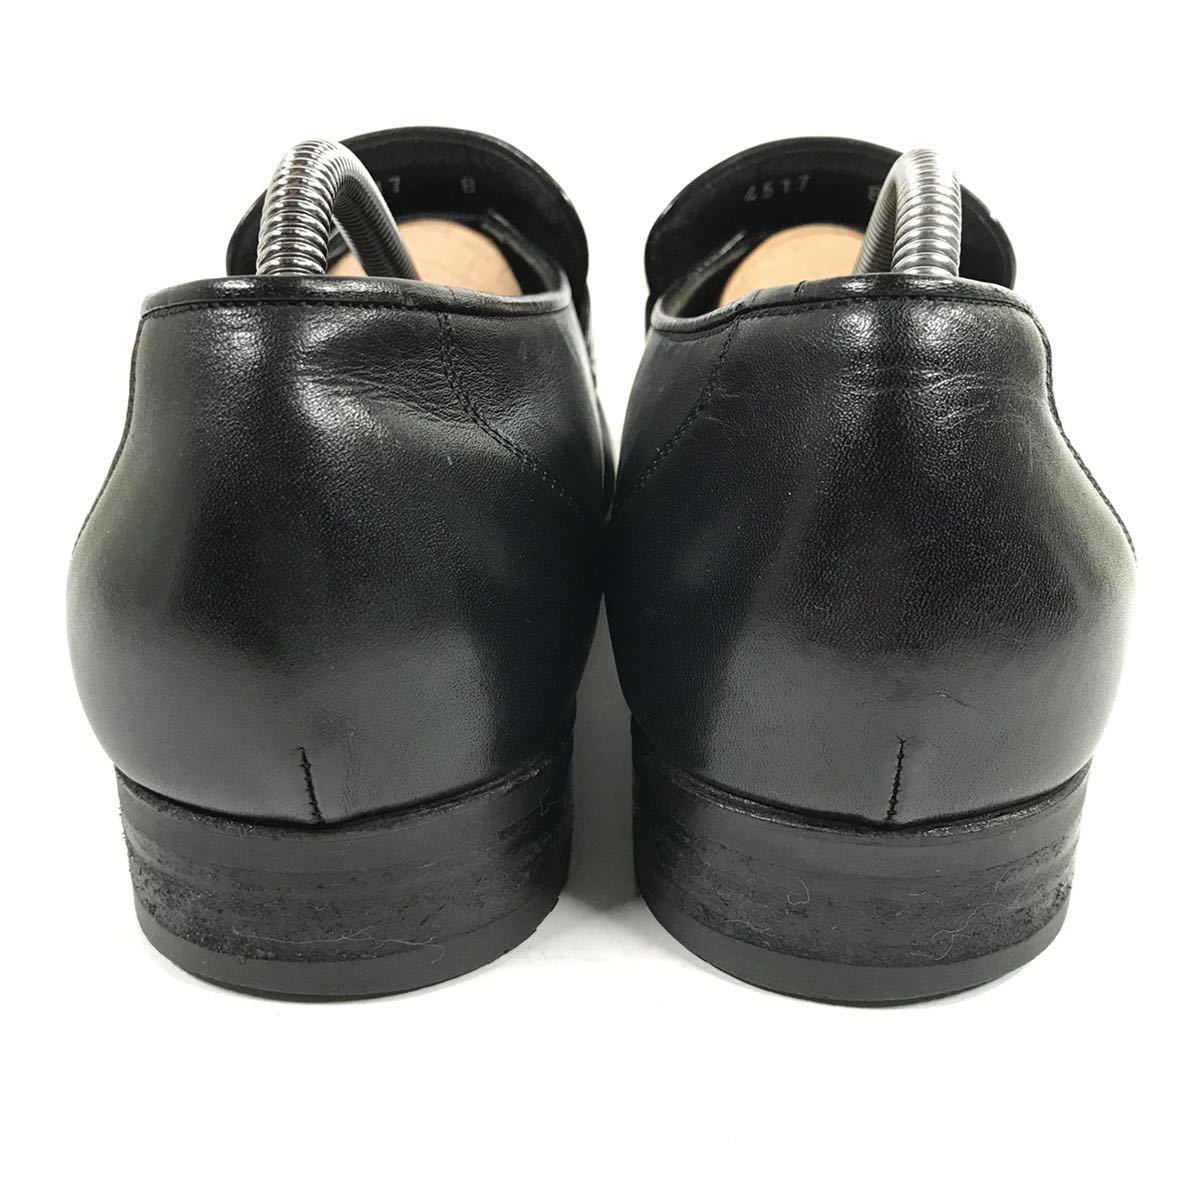 [a* тест -ni] подлинный товар a.testoni обувь 27cm чёрный o- -тактный нога bit Loafer бизнес обувь Ostrich . птица мужской сделано в Италии 8